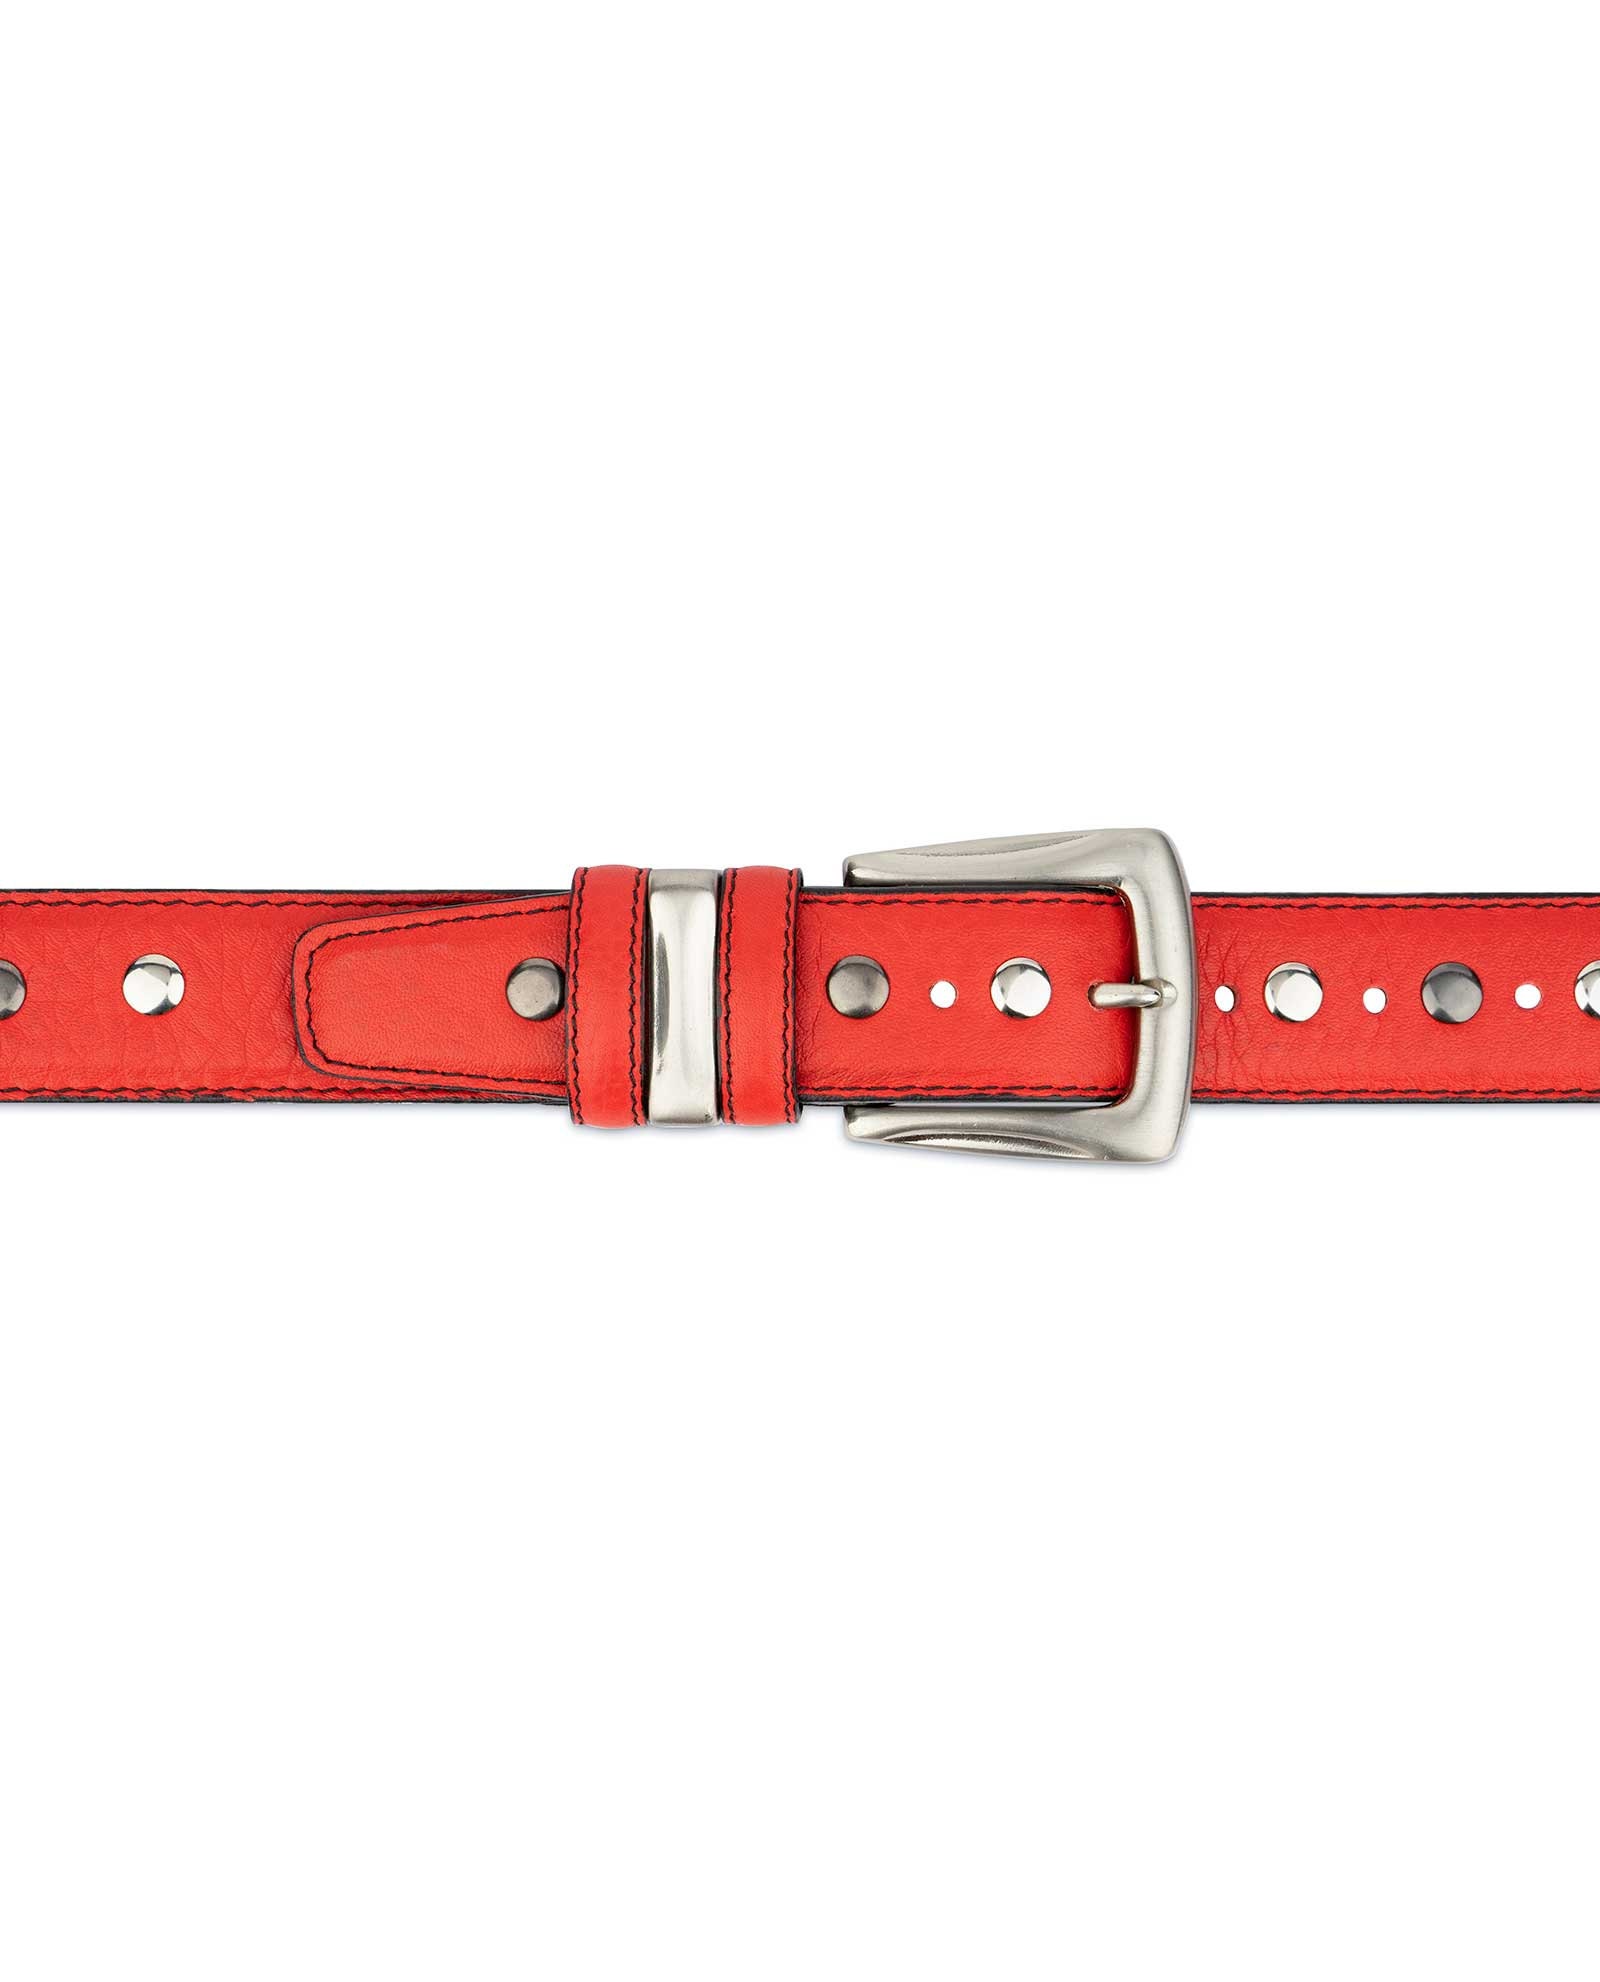 Red Studded Belt Studded Leather Belt Studded Belt Mens | Etsy